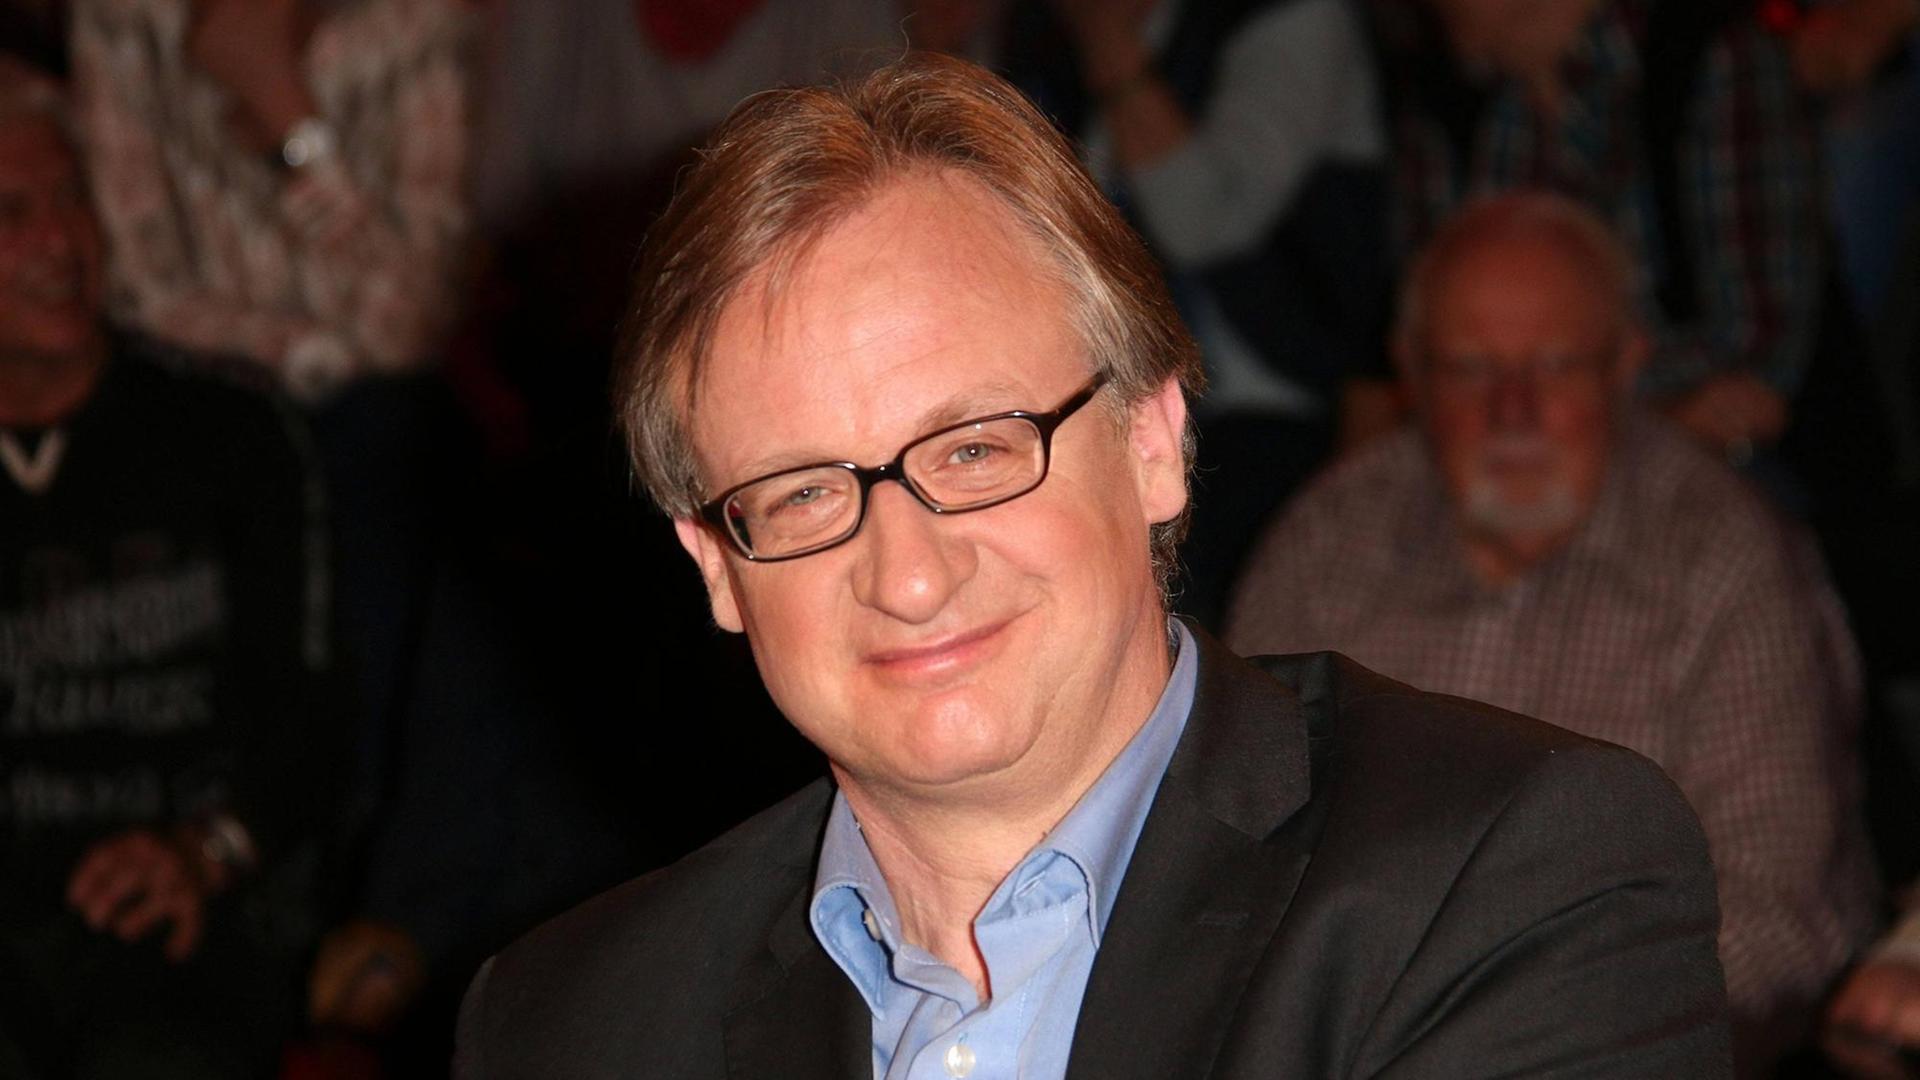 Der Politikwissenschaftler Albrecht von Lucke zu Gast in der Markus Lanz Talkshow im ZDF.